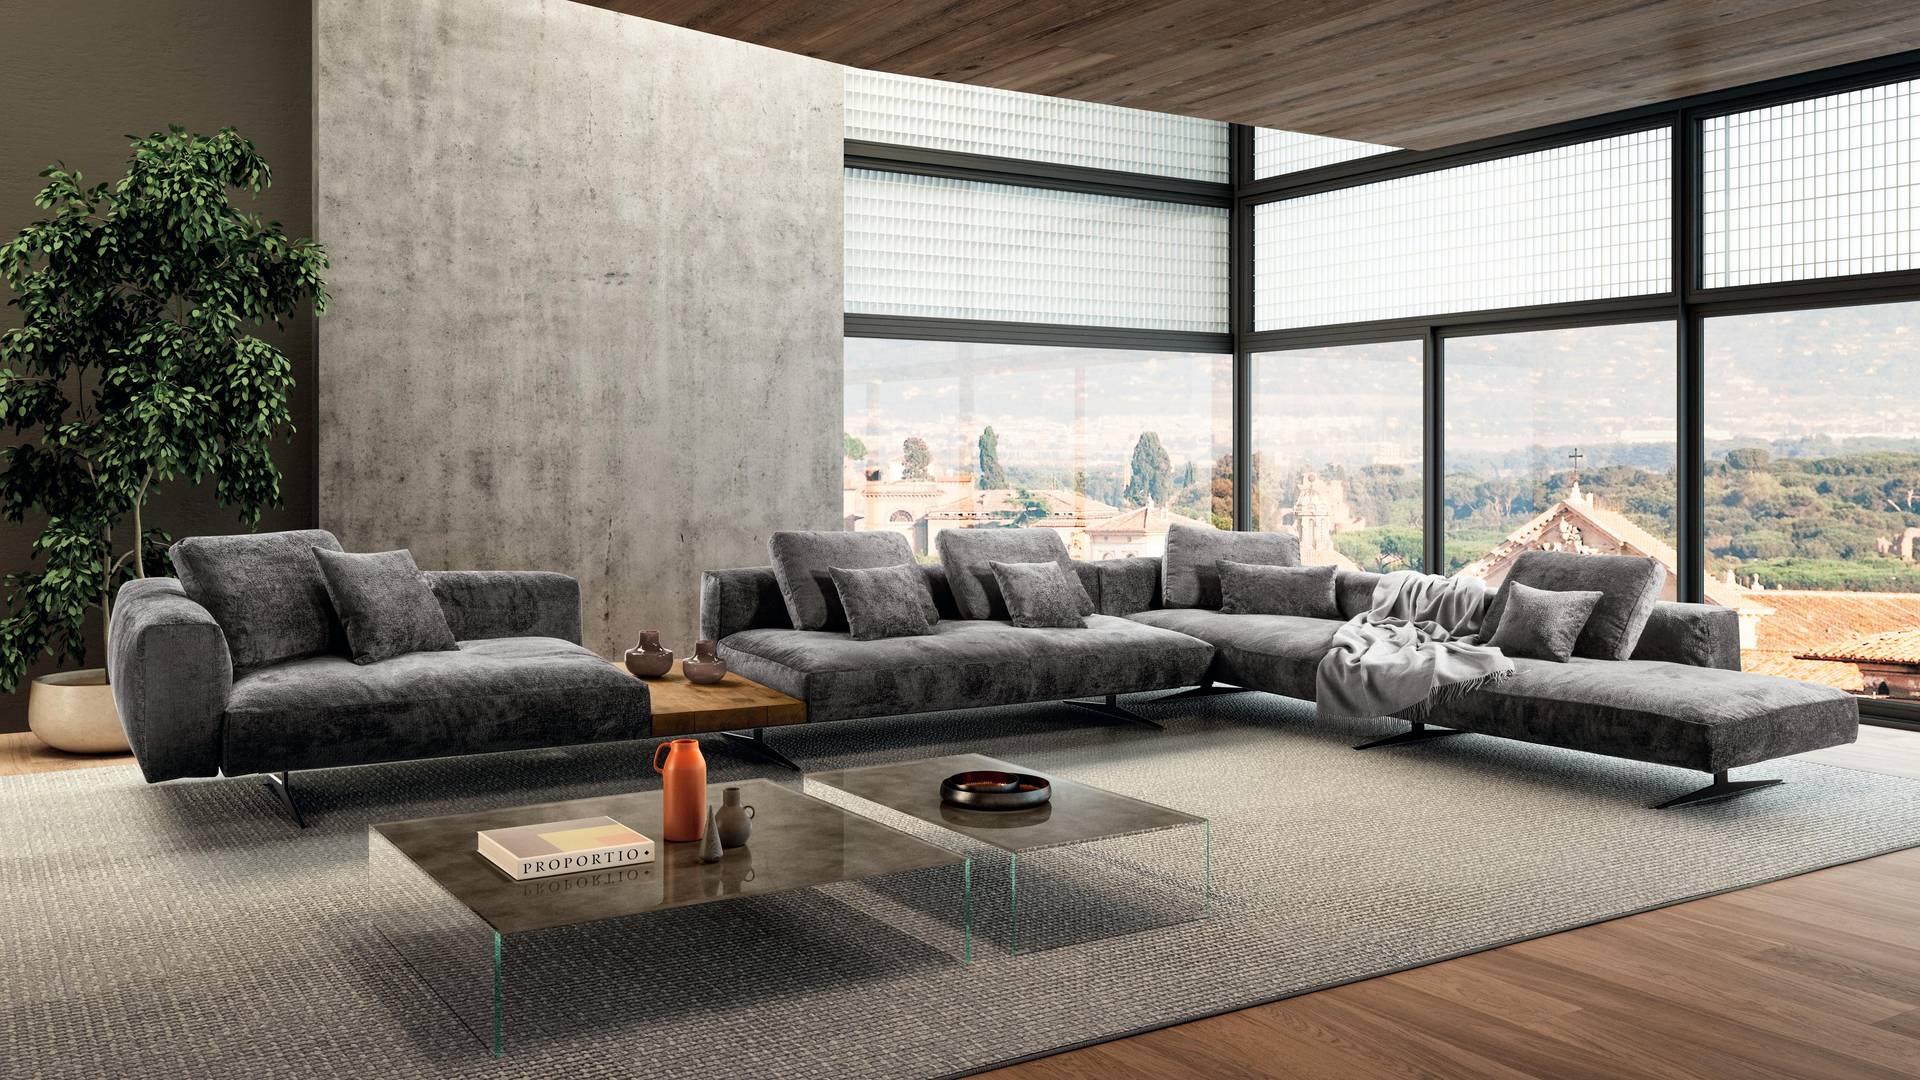 Sofa-moderno-esquinero-modular-con-respaldo-bajo-color-gris-oscuro